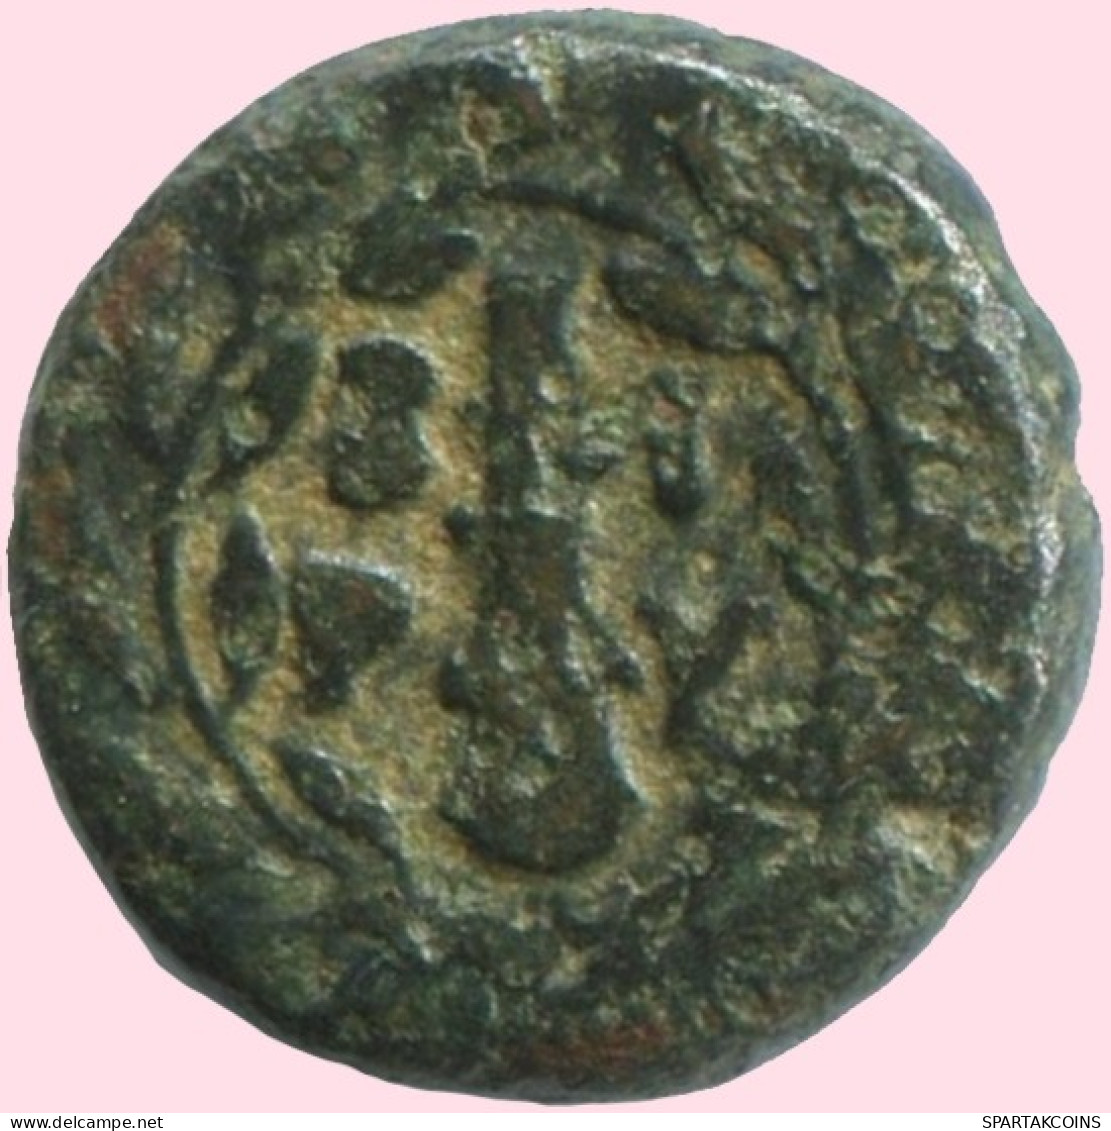 WREATH Ancient Authentic Original GREEK Coin 1.4g/10mm #ANT1688.10.U.A - Griechische Münzen